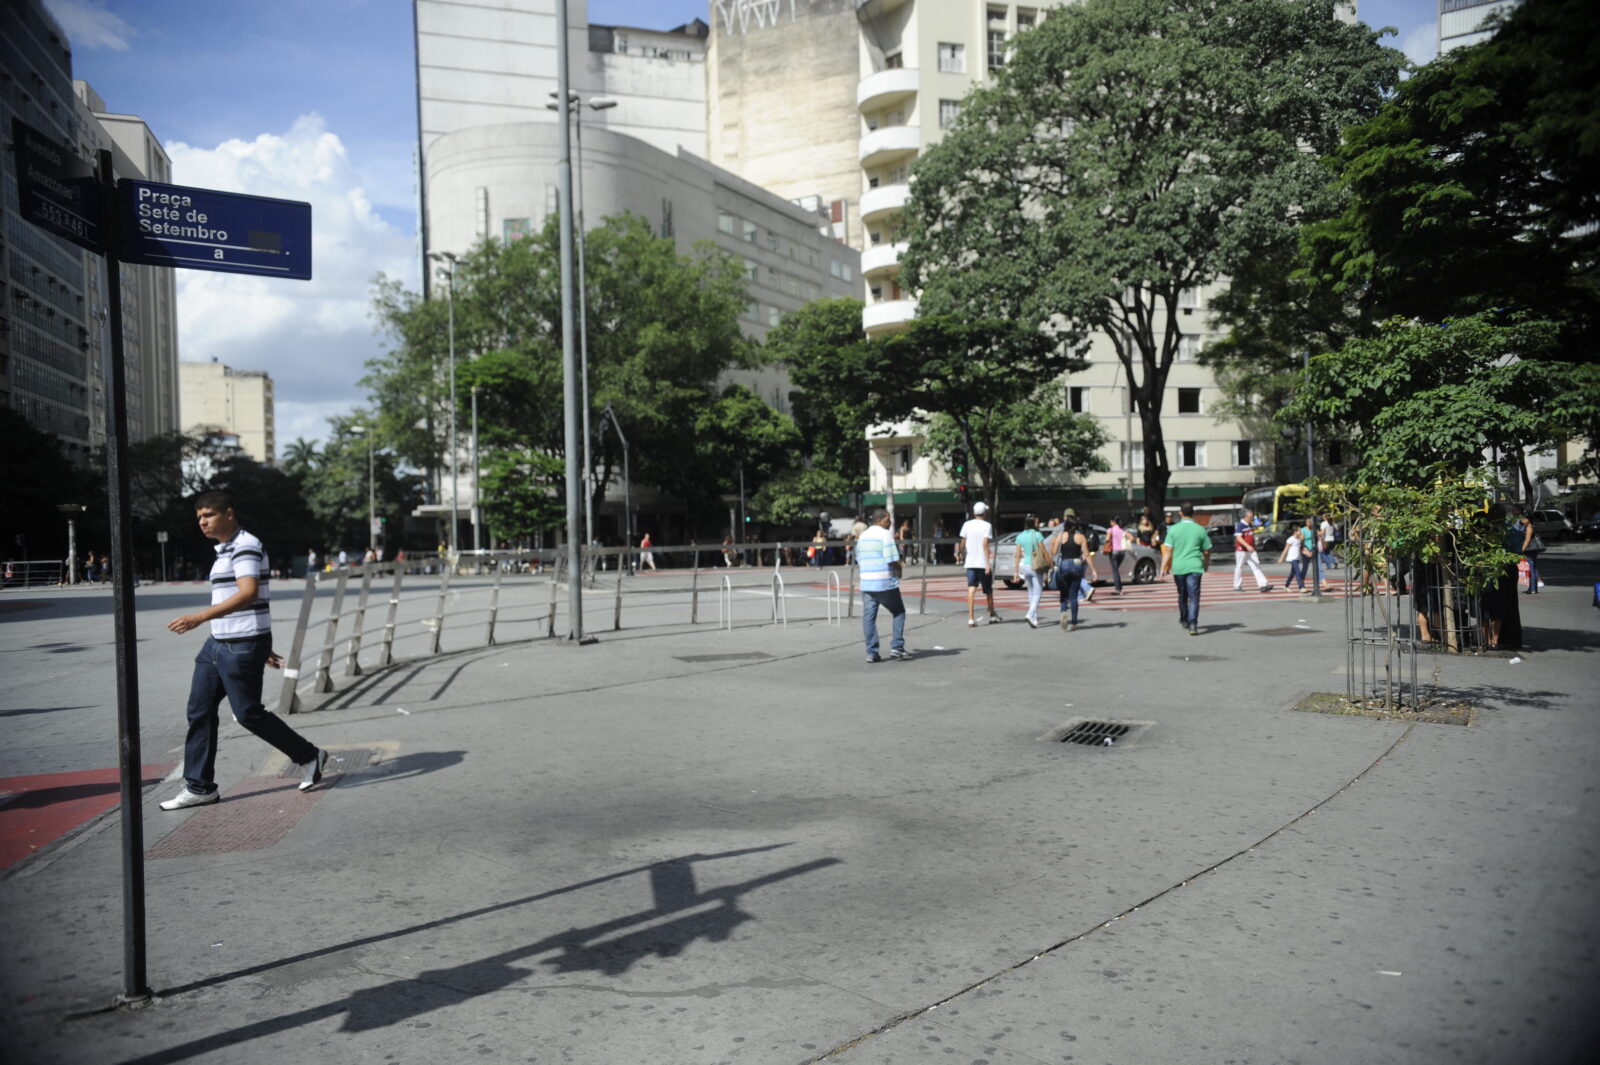 Belo Horizonte - Na capital mineira o local de início das manifestações ocorridas em junho do ano passado foi a praça Sete de Setembro (Tomaz Silva/Agência Brasil) Por: 29 14:29:17